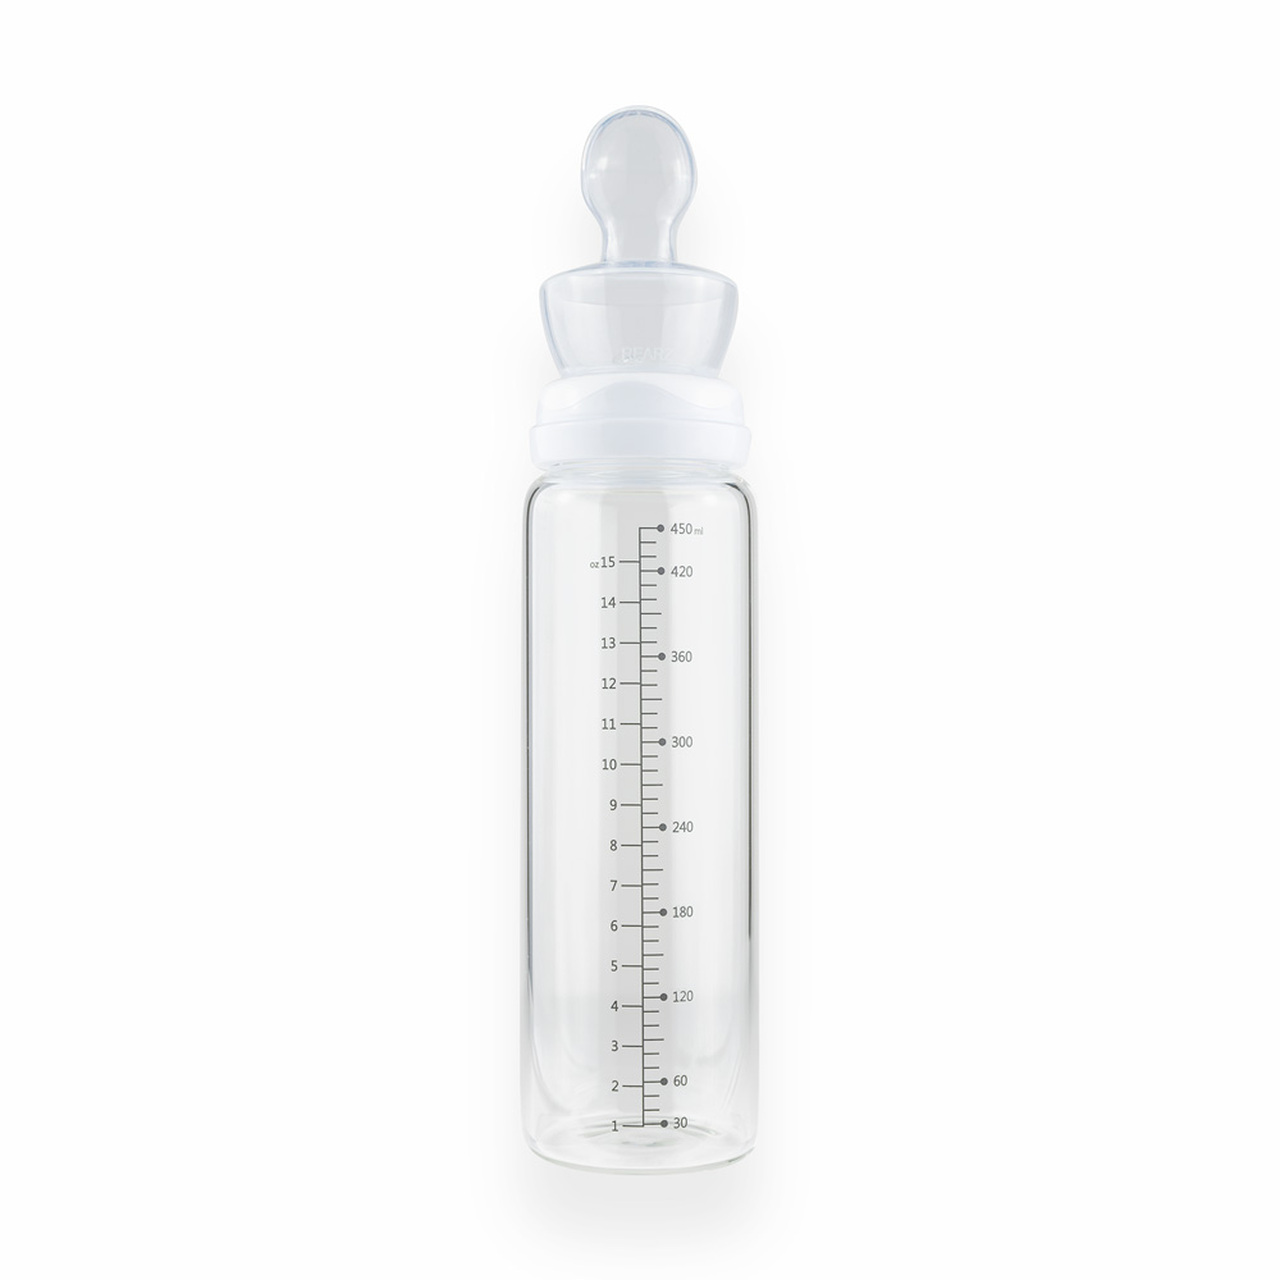 Rearz Glass Adult Baby Bottle